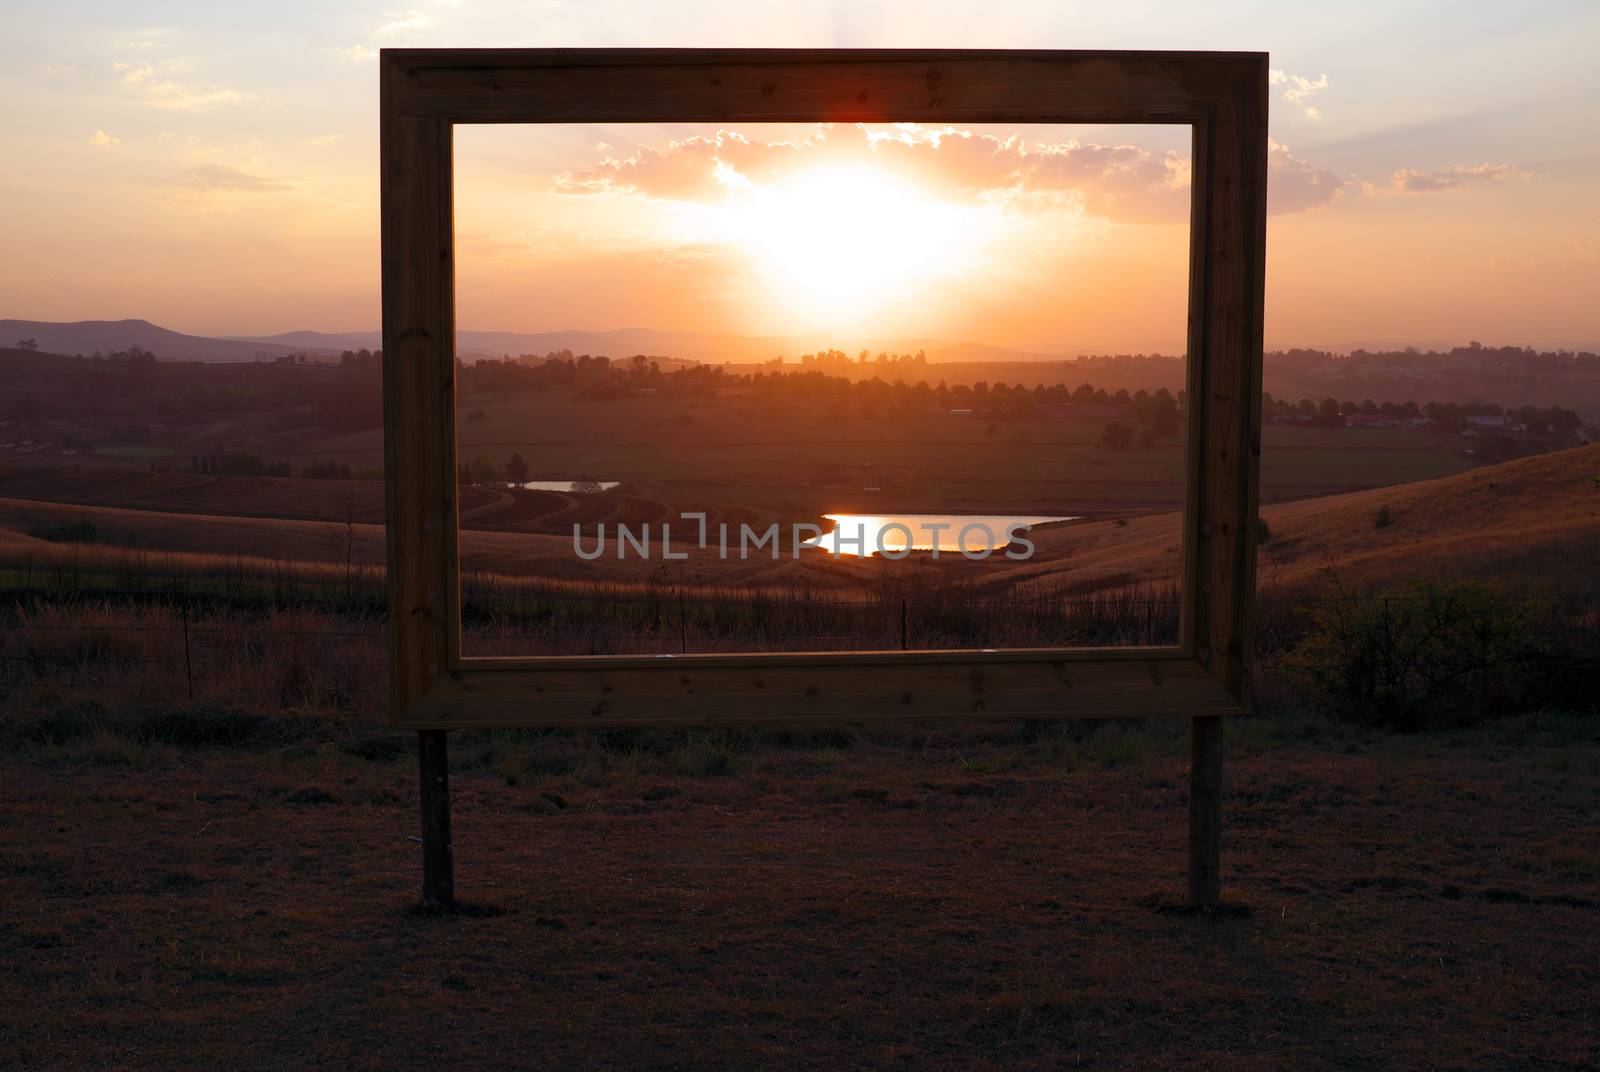 Sales sign frames African sunset